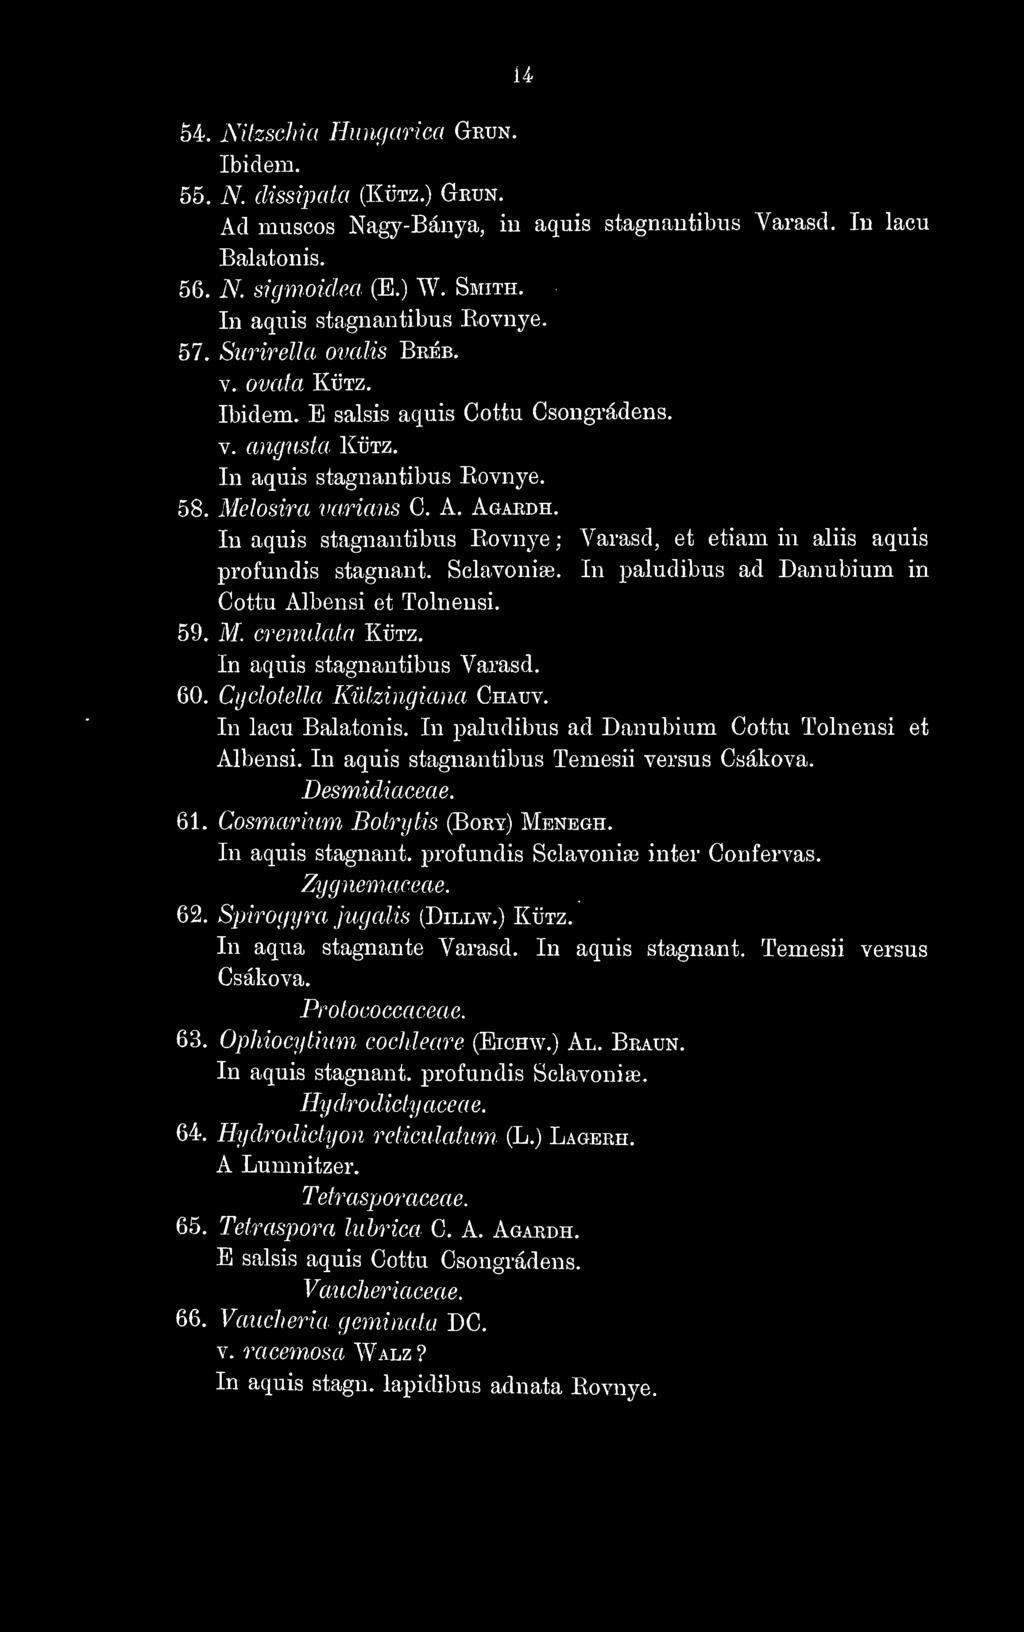 In aquis stagnantibus Eovnye ; Várasd, et etiam in aliis aquis profundis stagnant. Sclavonise, In paludibus ad Danubium in Cottu Albensi et Tolnensi. 59. M. crenulata Kütz.